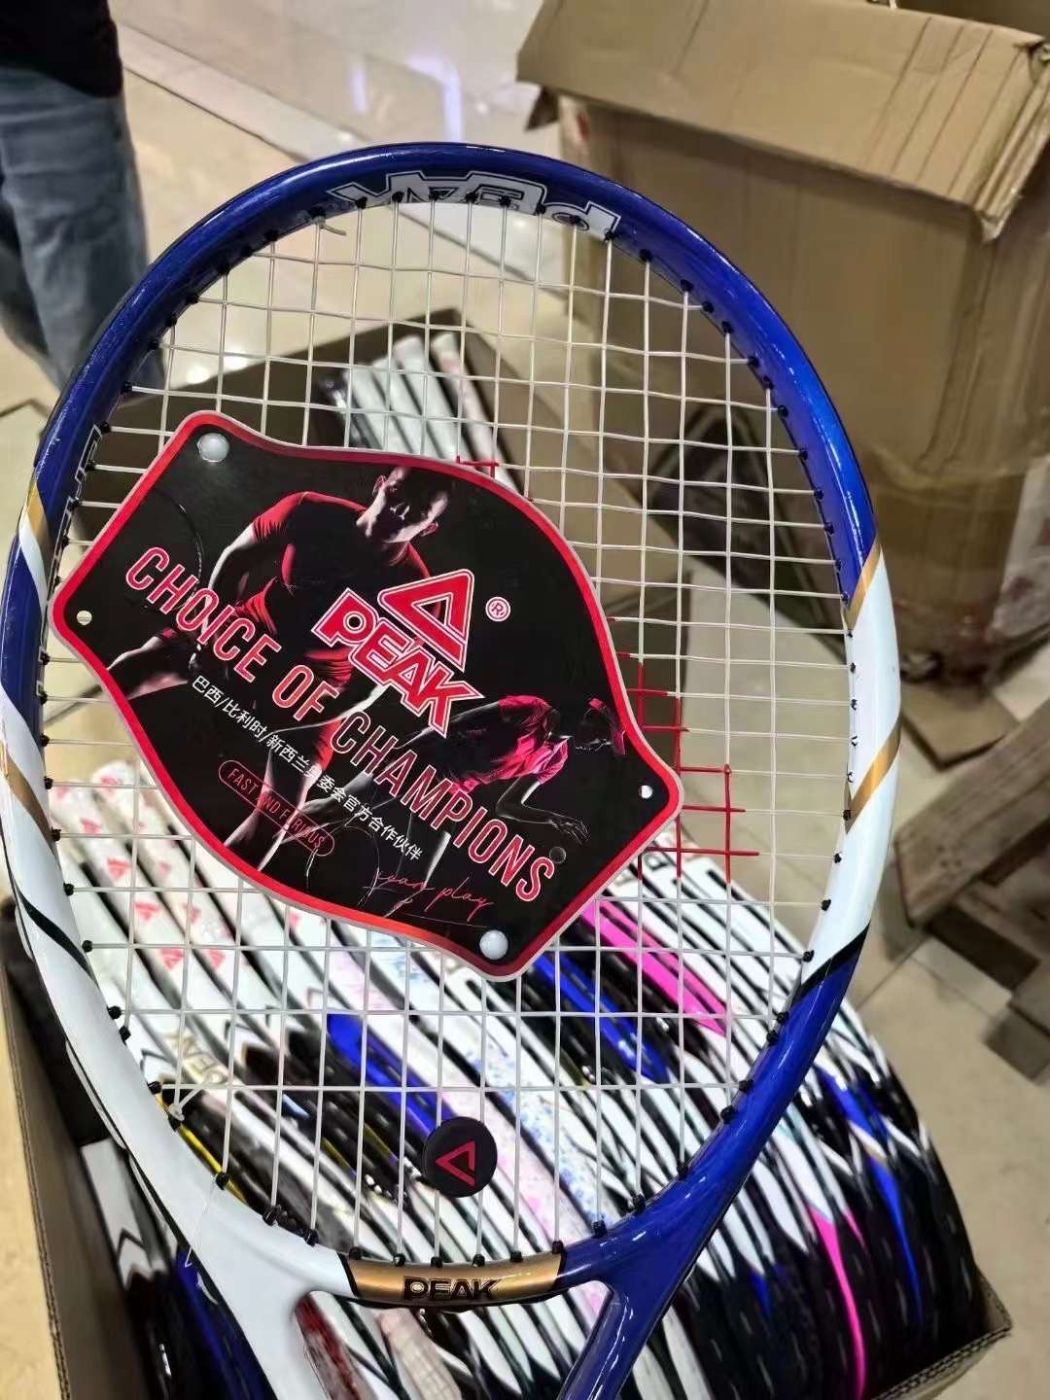 Vợt Tennis chính hãng PEAK , thân Carbon , nhẹ 280gram , - hàng trưng bày.